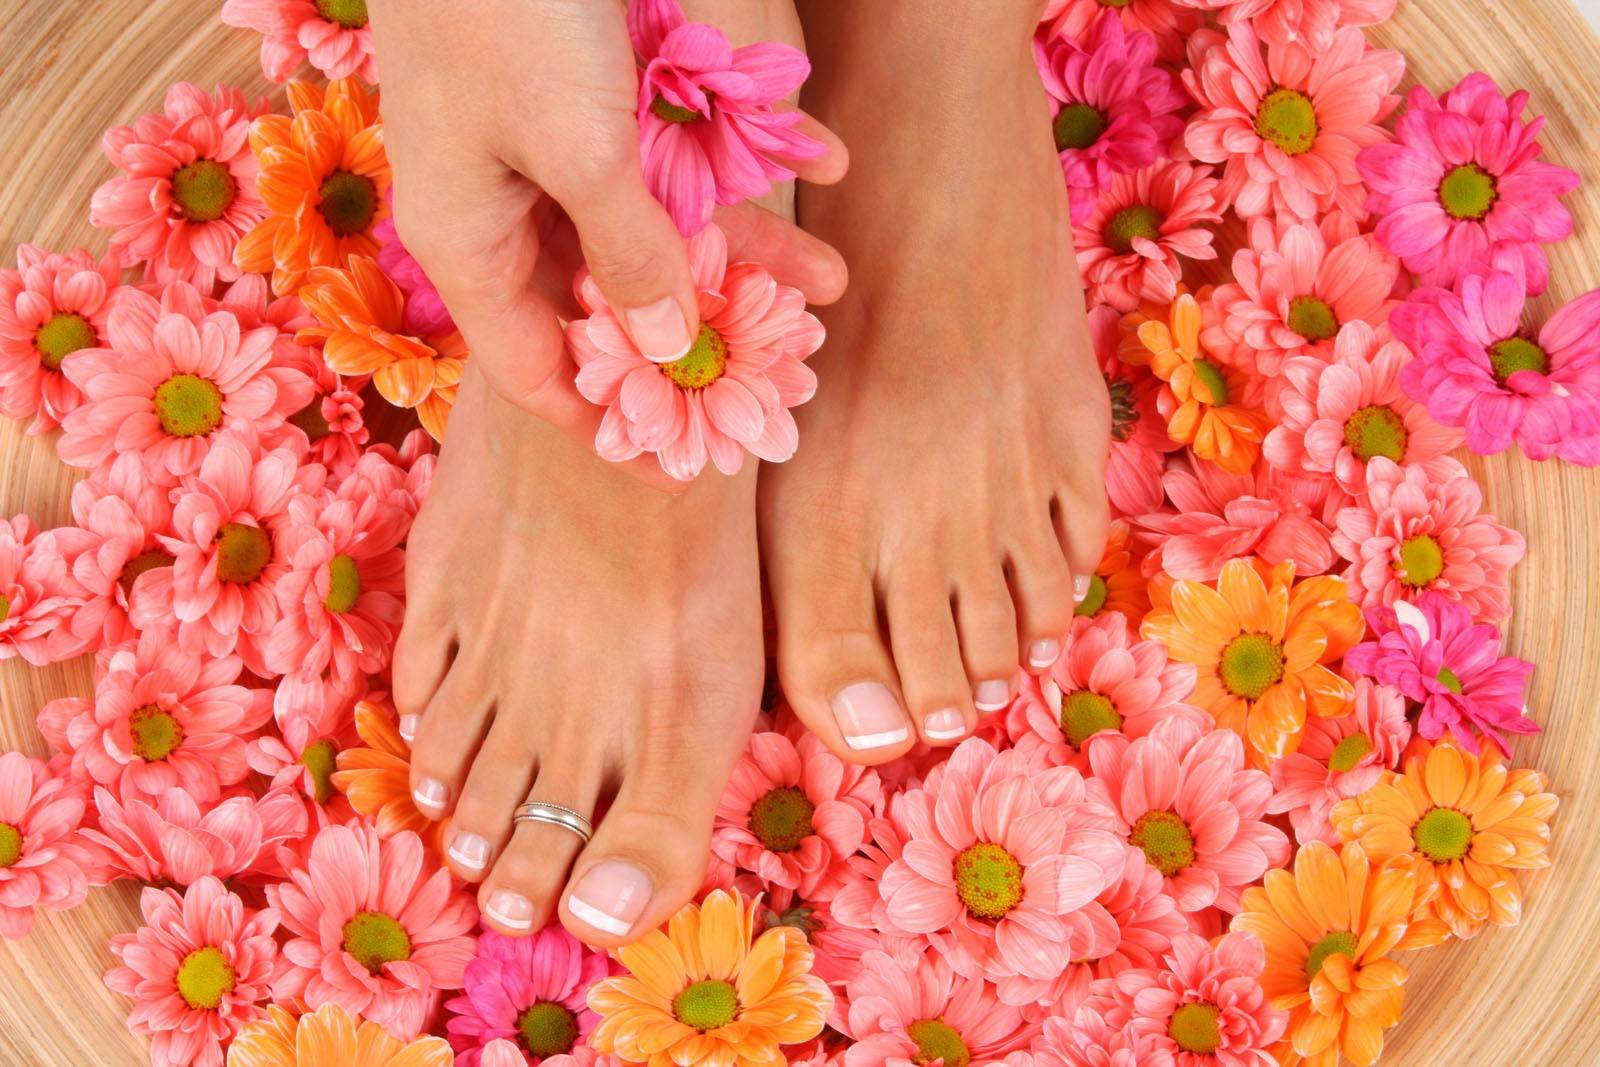 Фото ногтей на фоне цветов